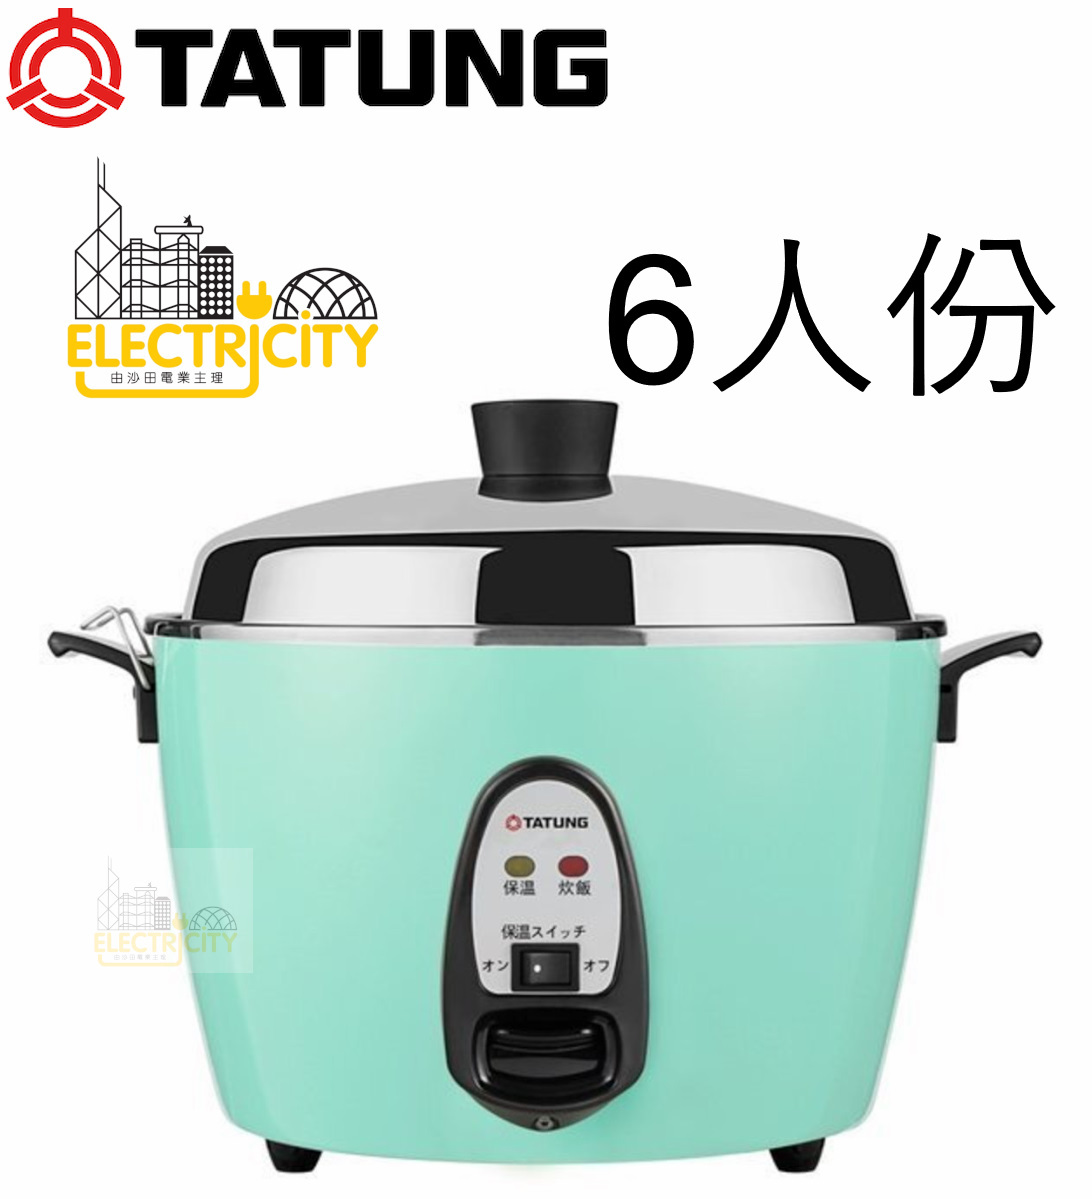 Tatung 大同- 香港標準TAC-6GS 6人份6杯米不鏽鋼電飯煲